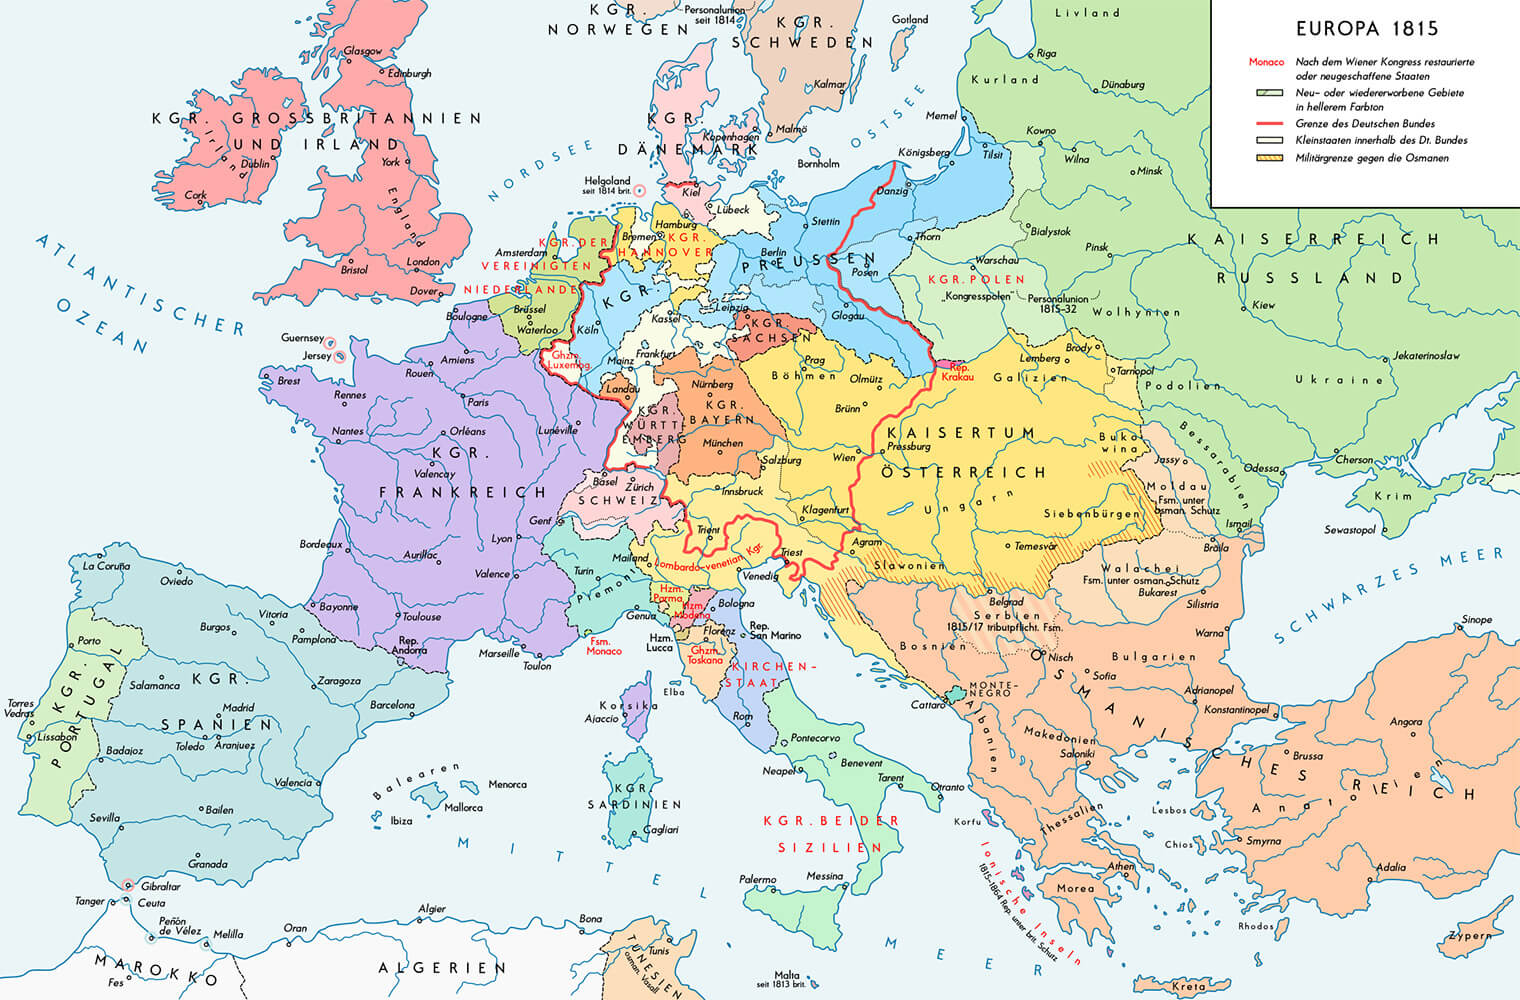 Europa zieht neue-alte Grenzen in Europa nach dem Wiener Kongress (1815).